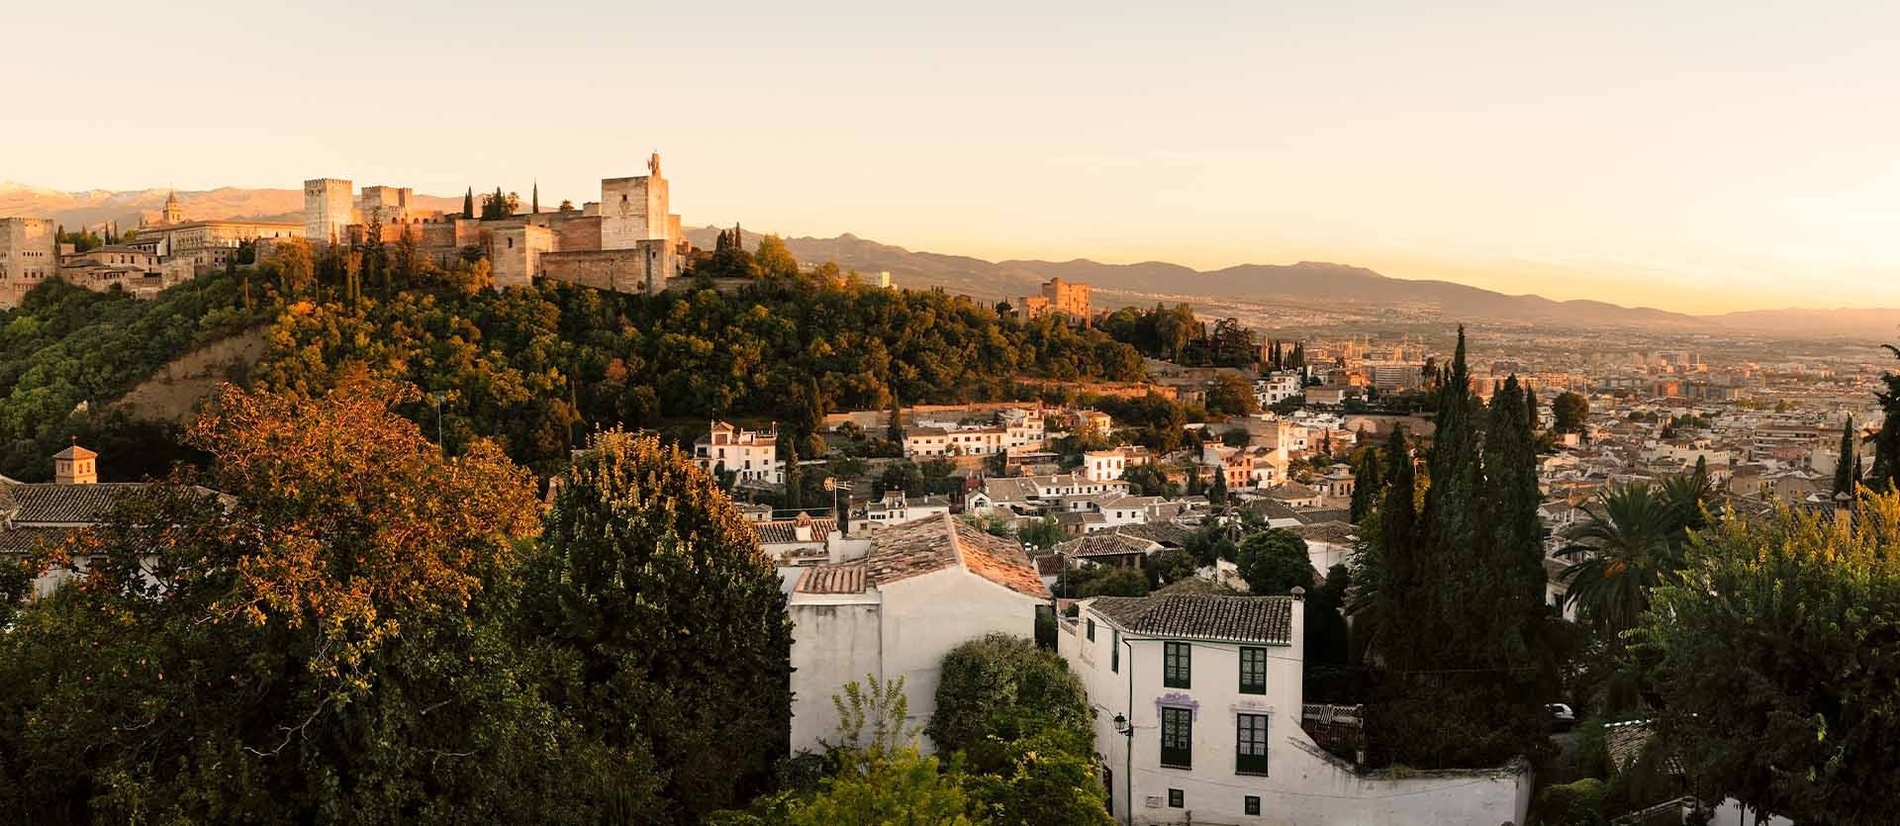 Hotel Reino de Granada | Granada